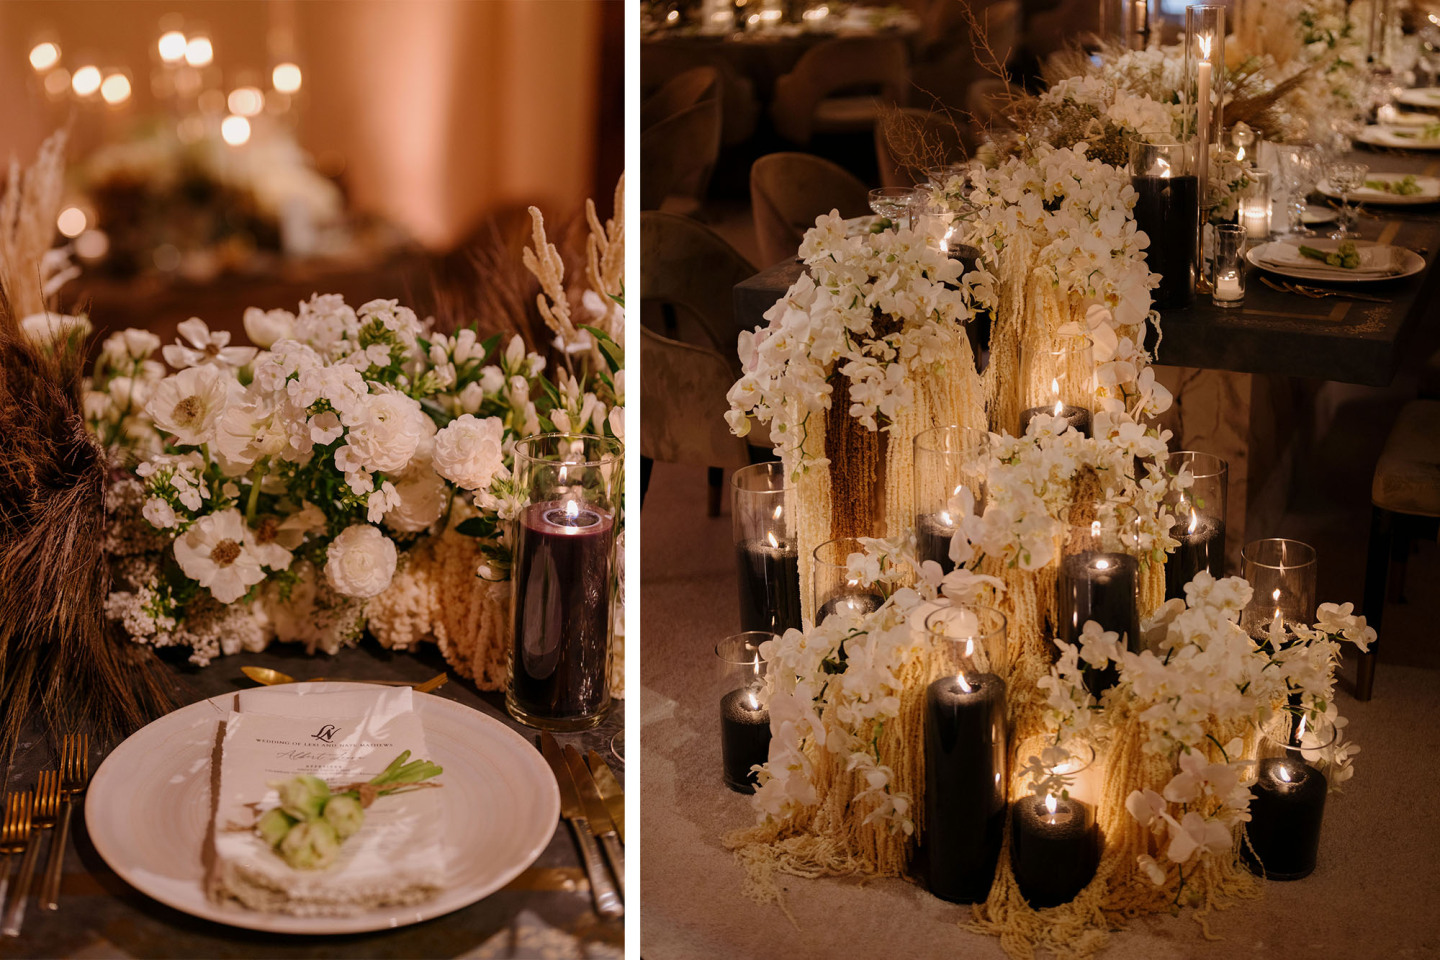 marks garden wedding reception table top floral design